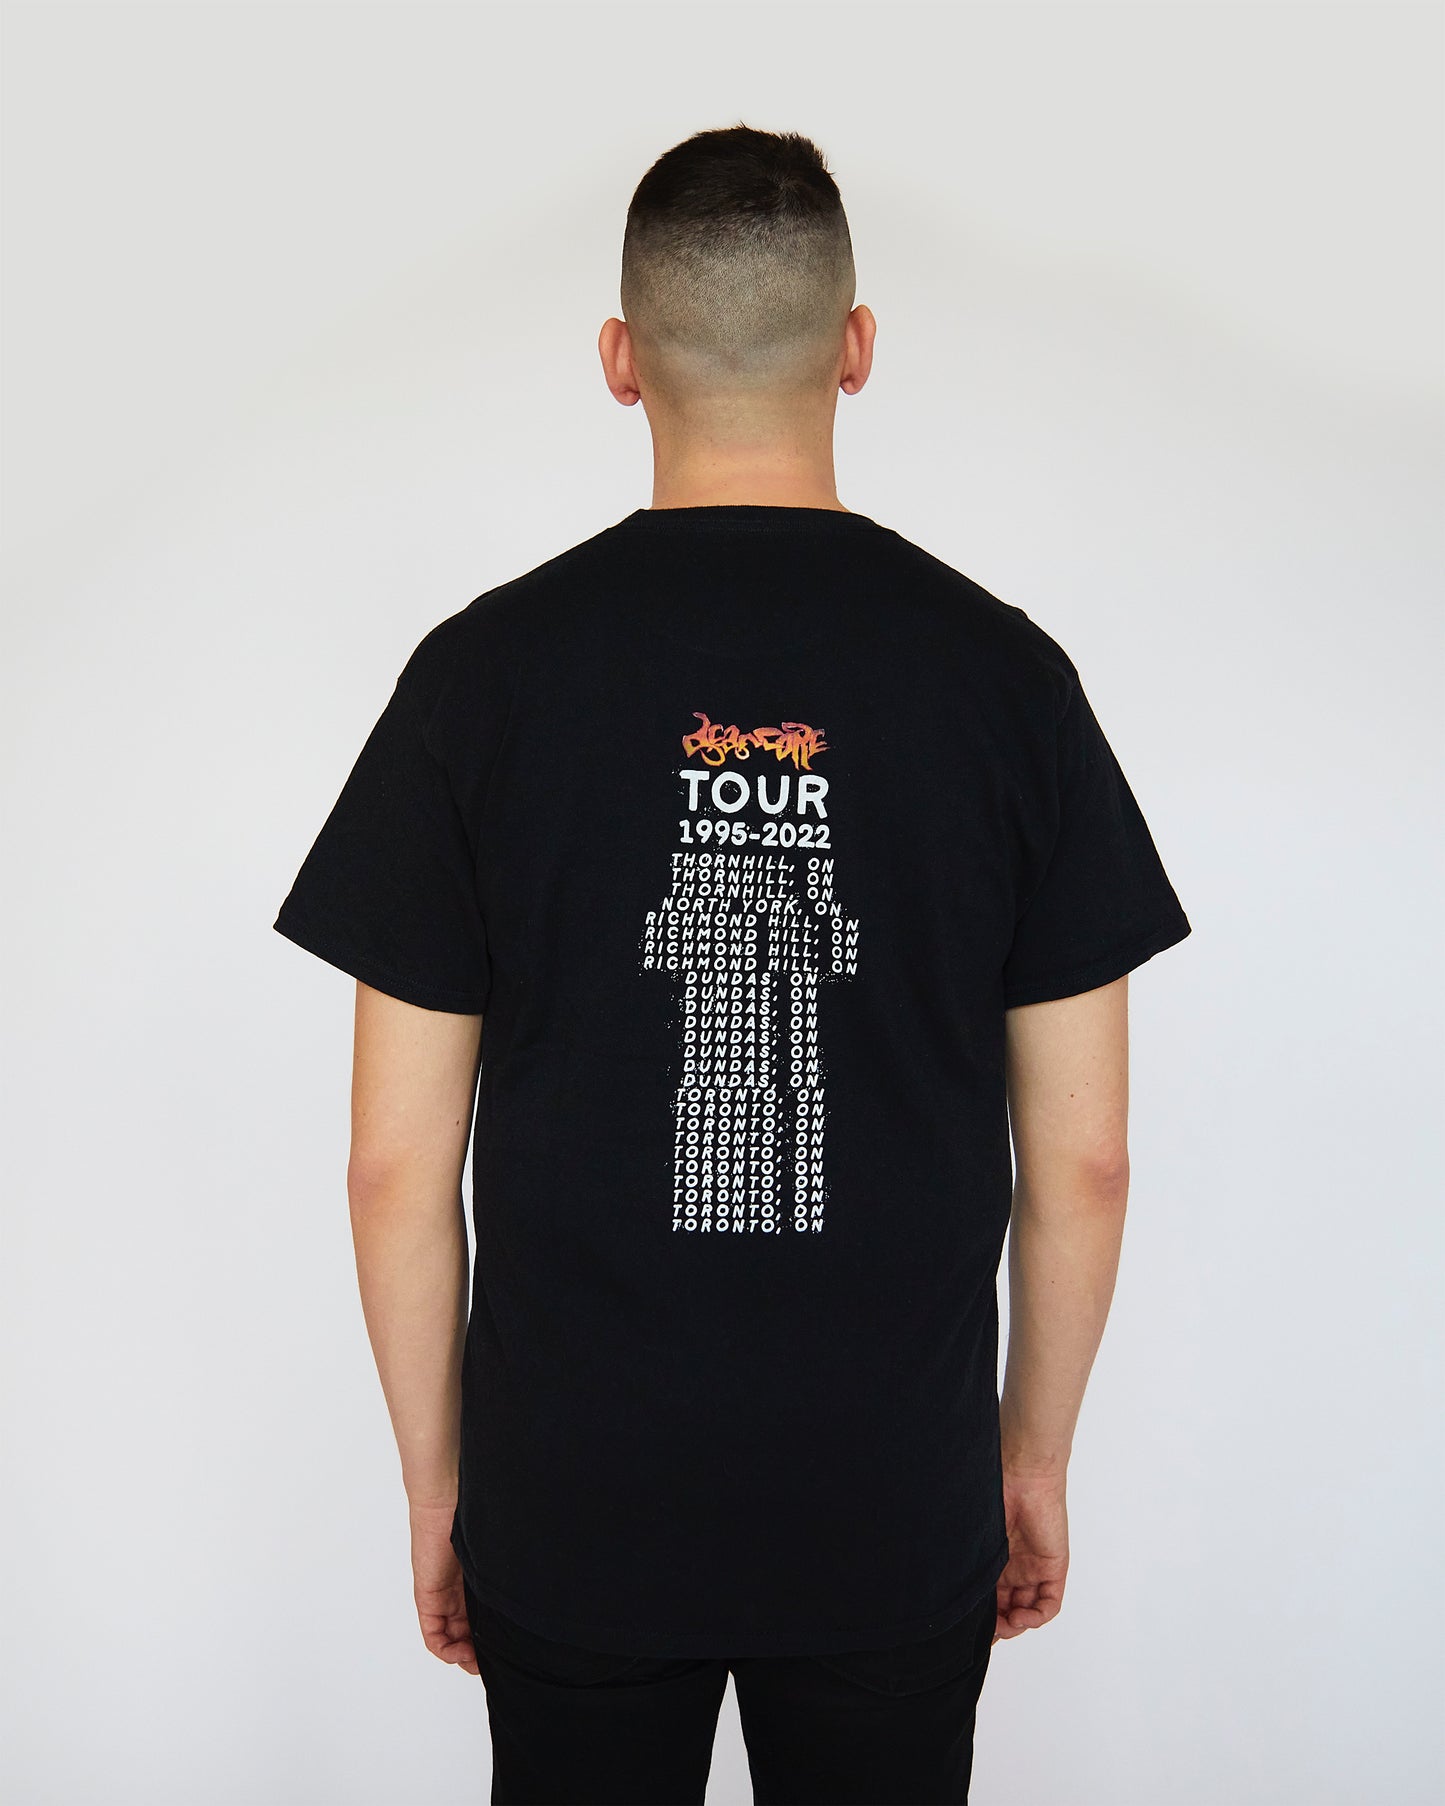 Deancore 'Life Tour'T-Shirt